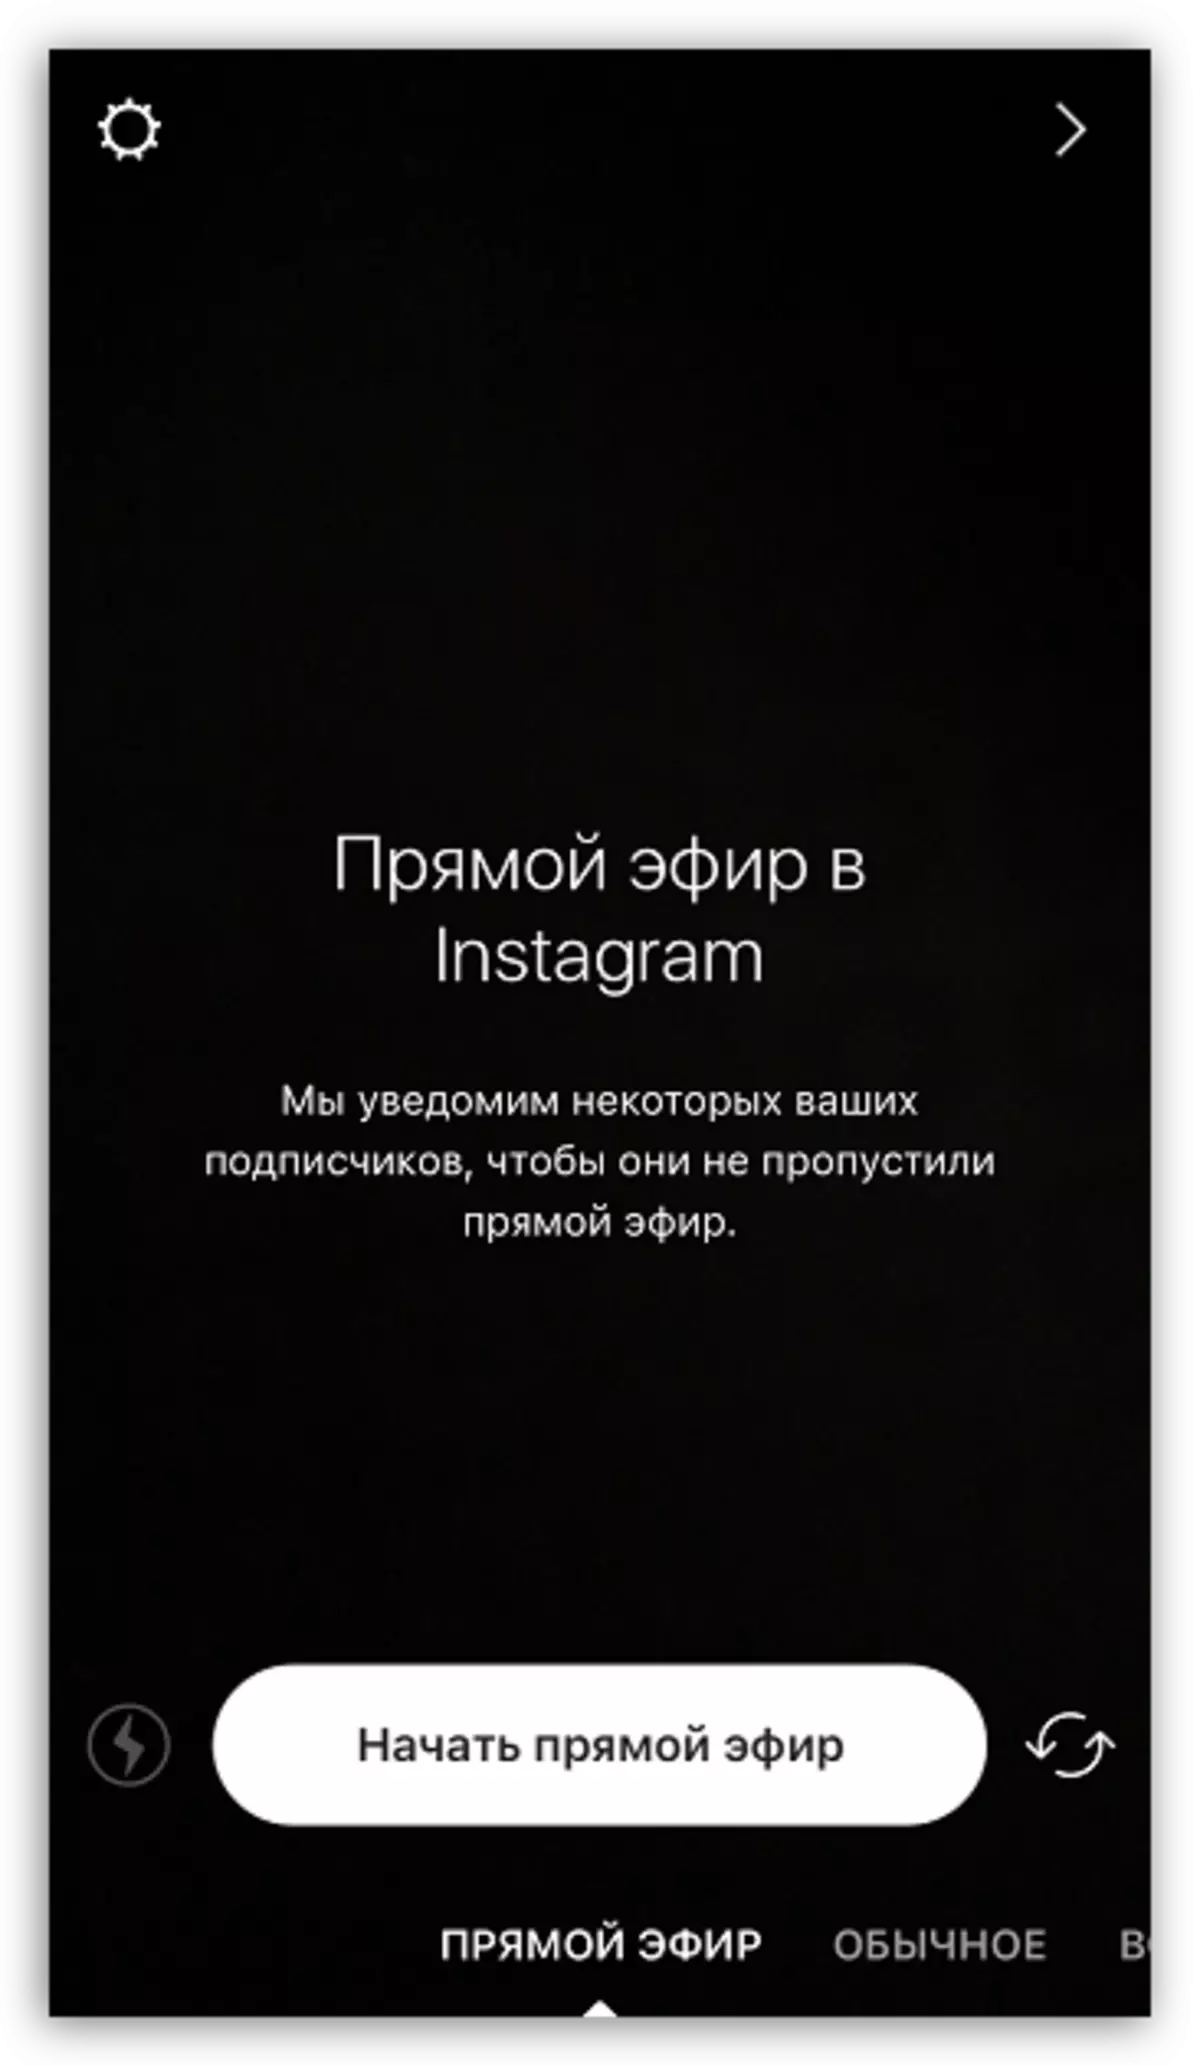 Instagram-eko eter zuzena IOS-erako